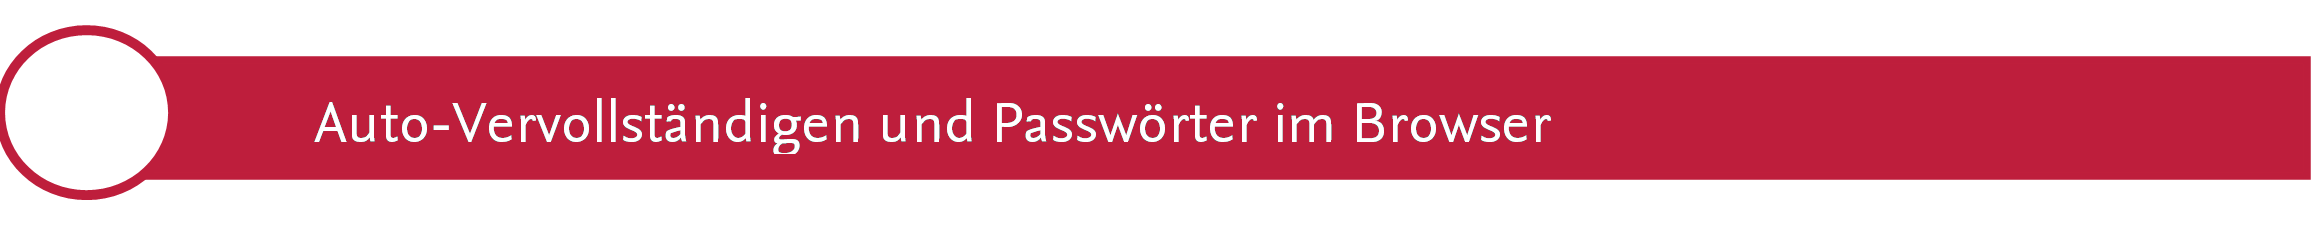 Auto-Vervollständigen und Passwörter im Browser